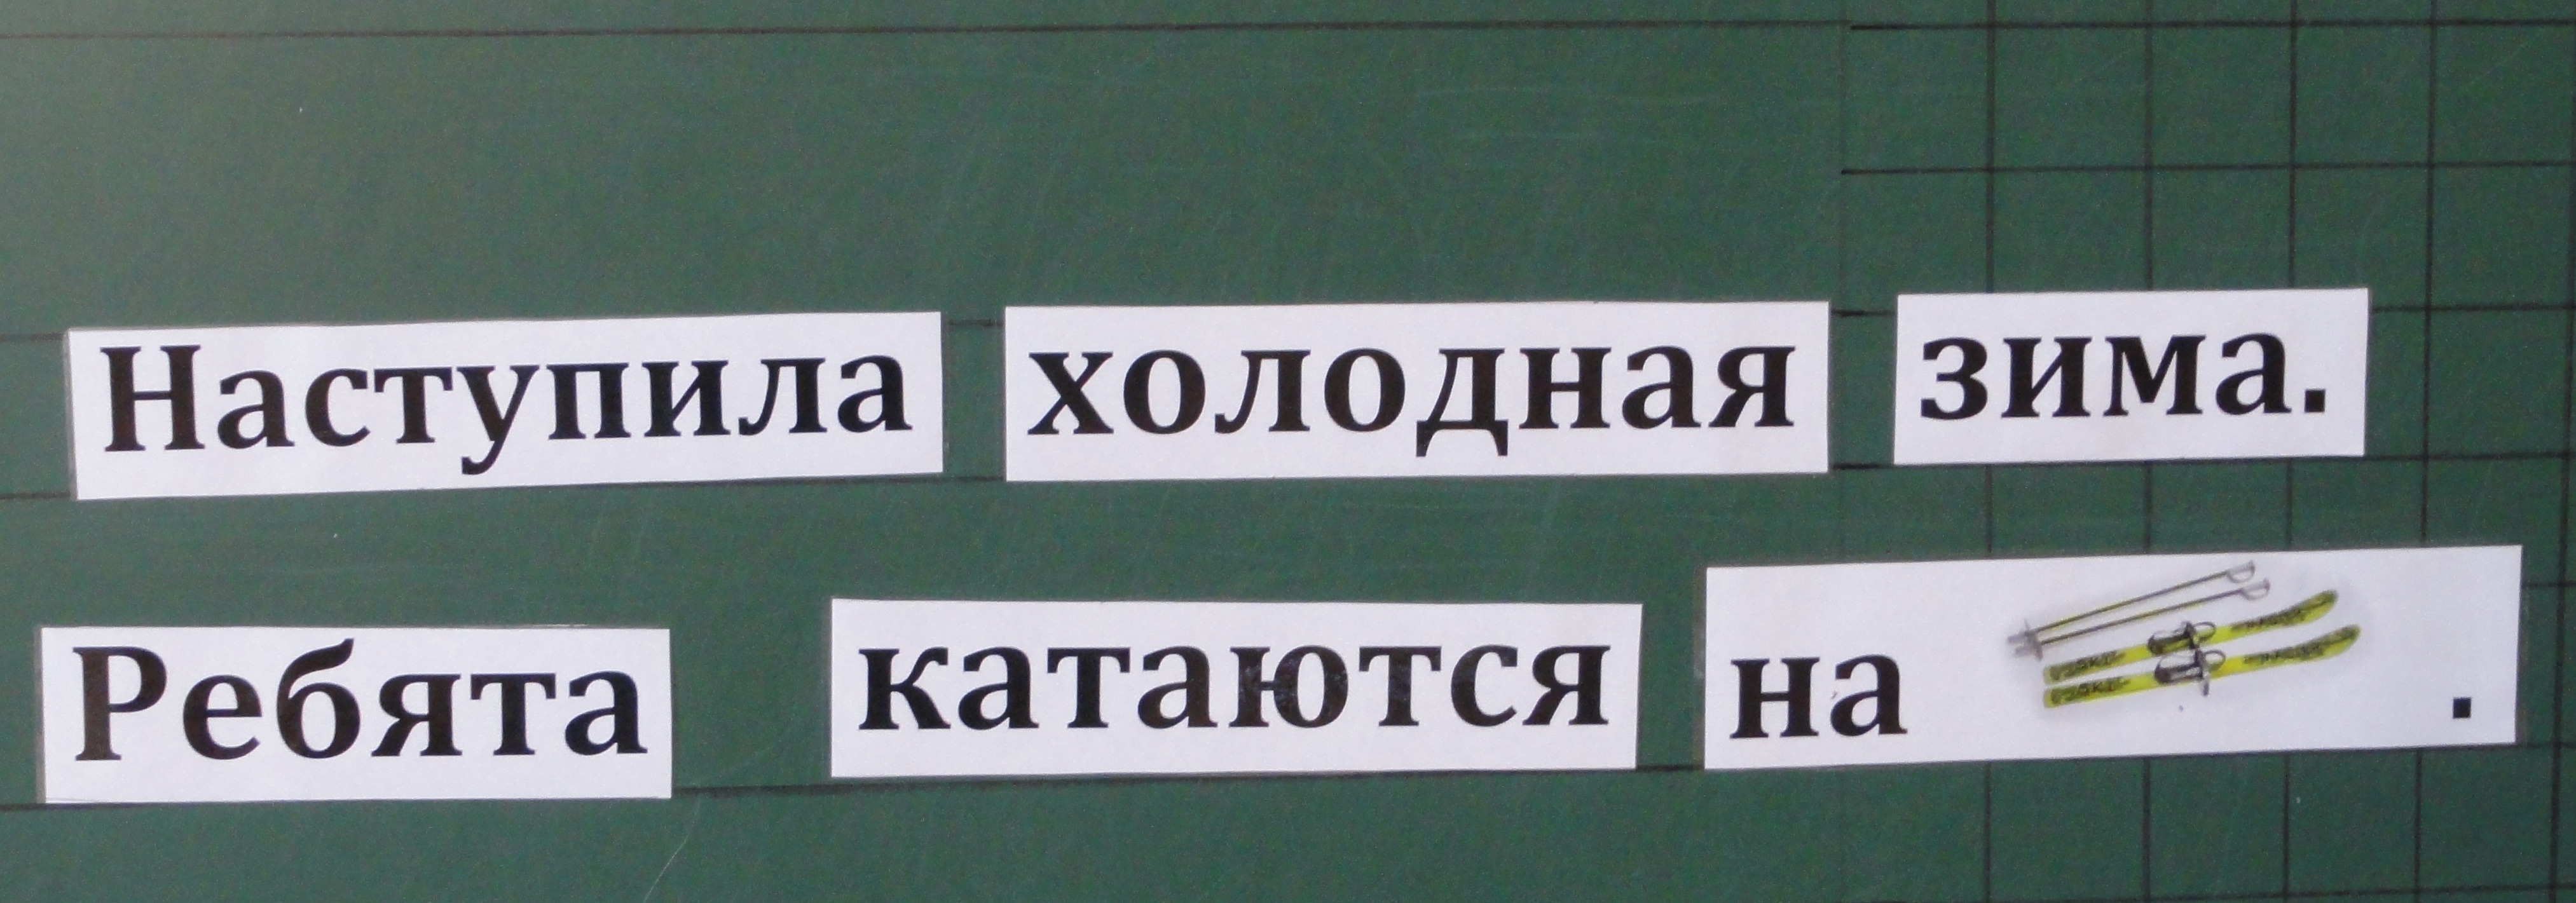 Конспект урока по русскому языку на тему « Различай слова, которые отвечают на вопросы кто? и что?» 3 класс школа VIII вида